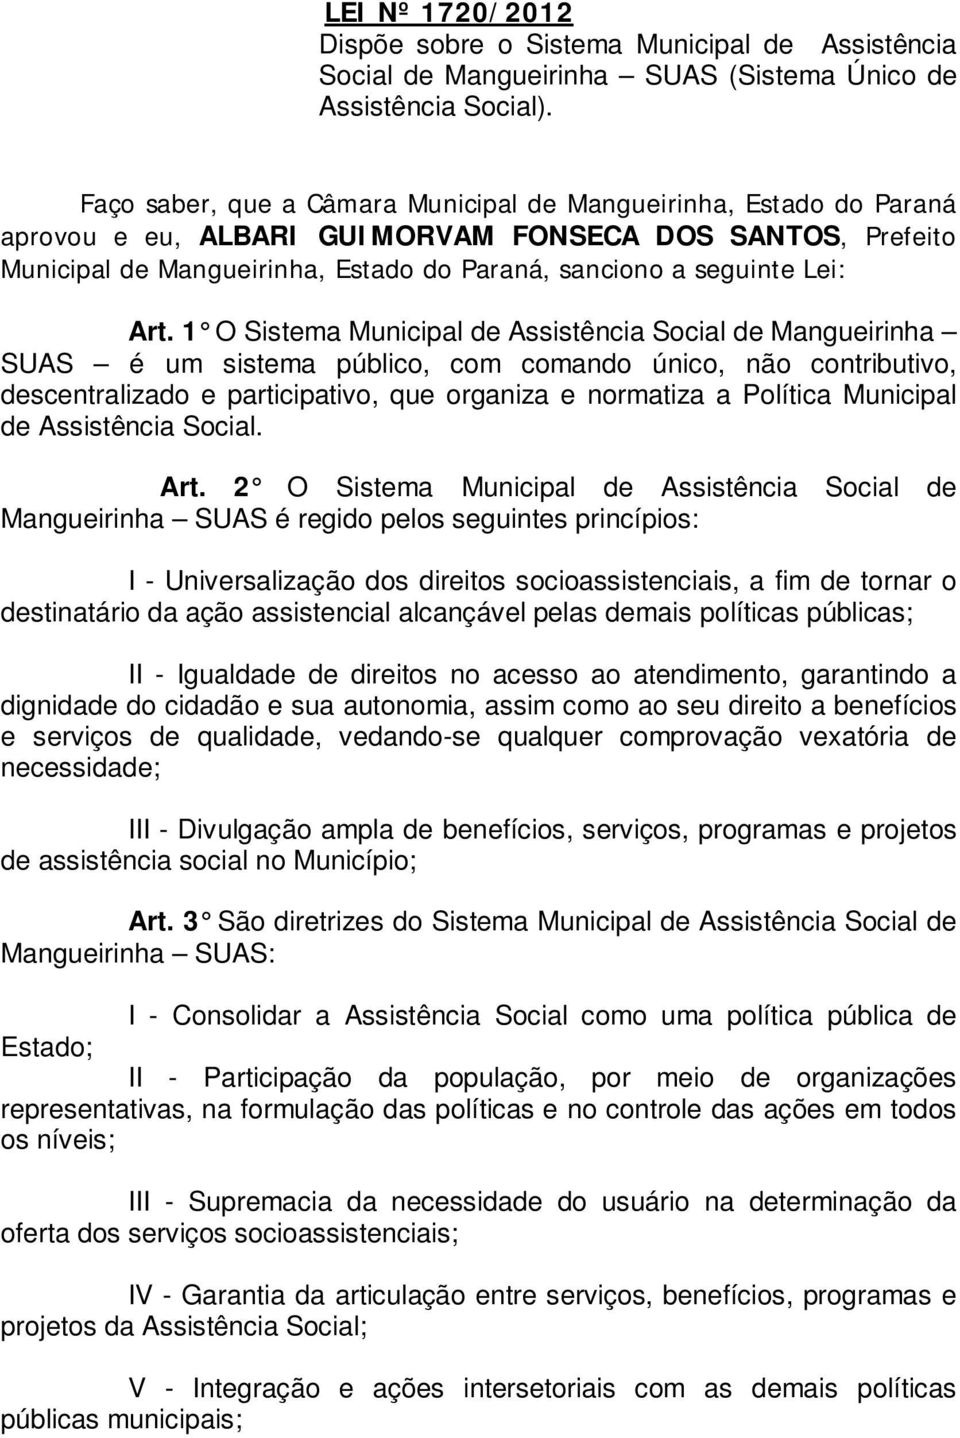 Art. 1 O Sistema Municipal de Assistência Social de Mangueirinha SUAS é um sistema público, com comando único, não contributivo, descentralizado e participativo, que organiza e normatiza a Política